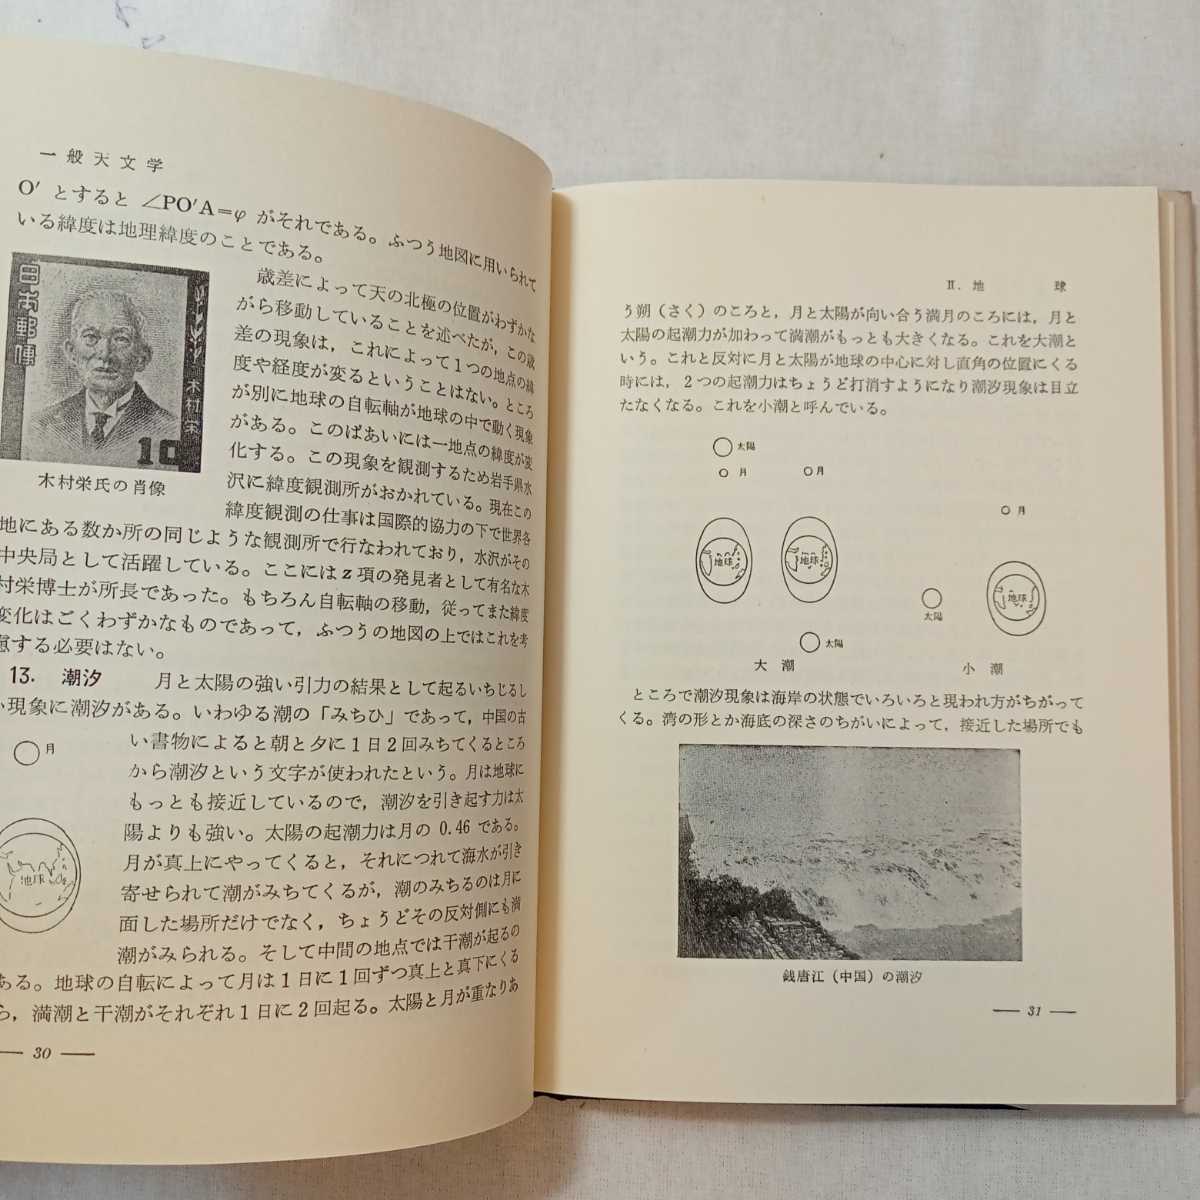 zaa-355♪一般天文学 　薮内 清 (著) 　恒星社厚生閣　単行本 1973/4/30